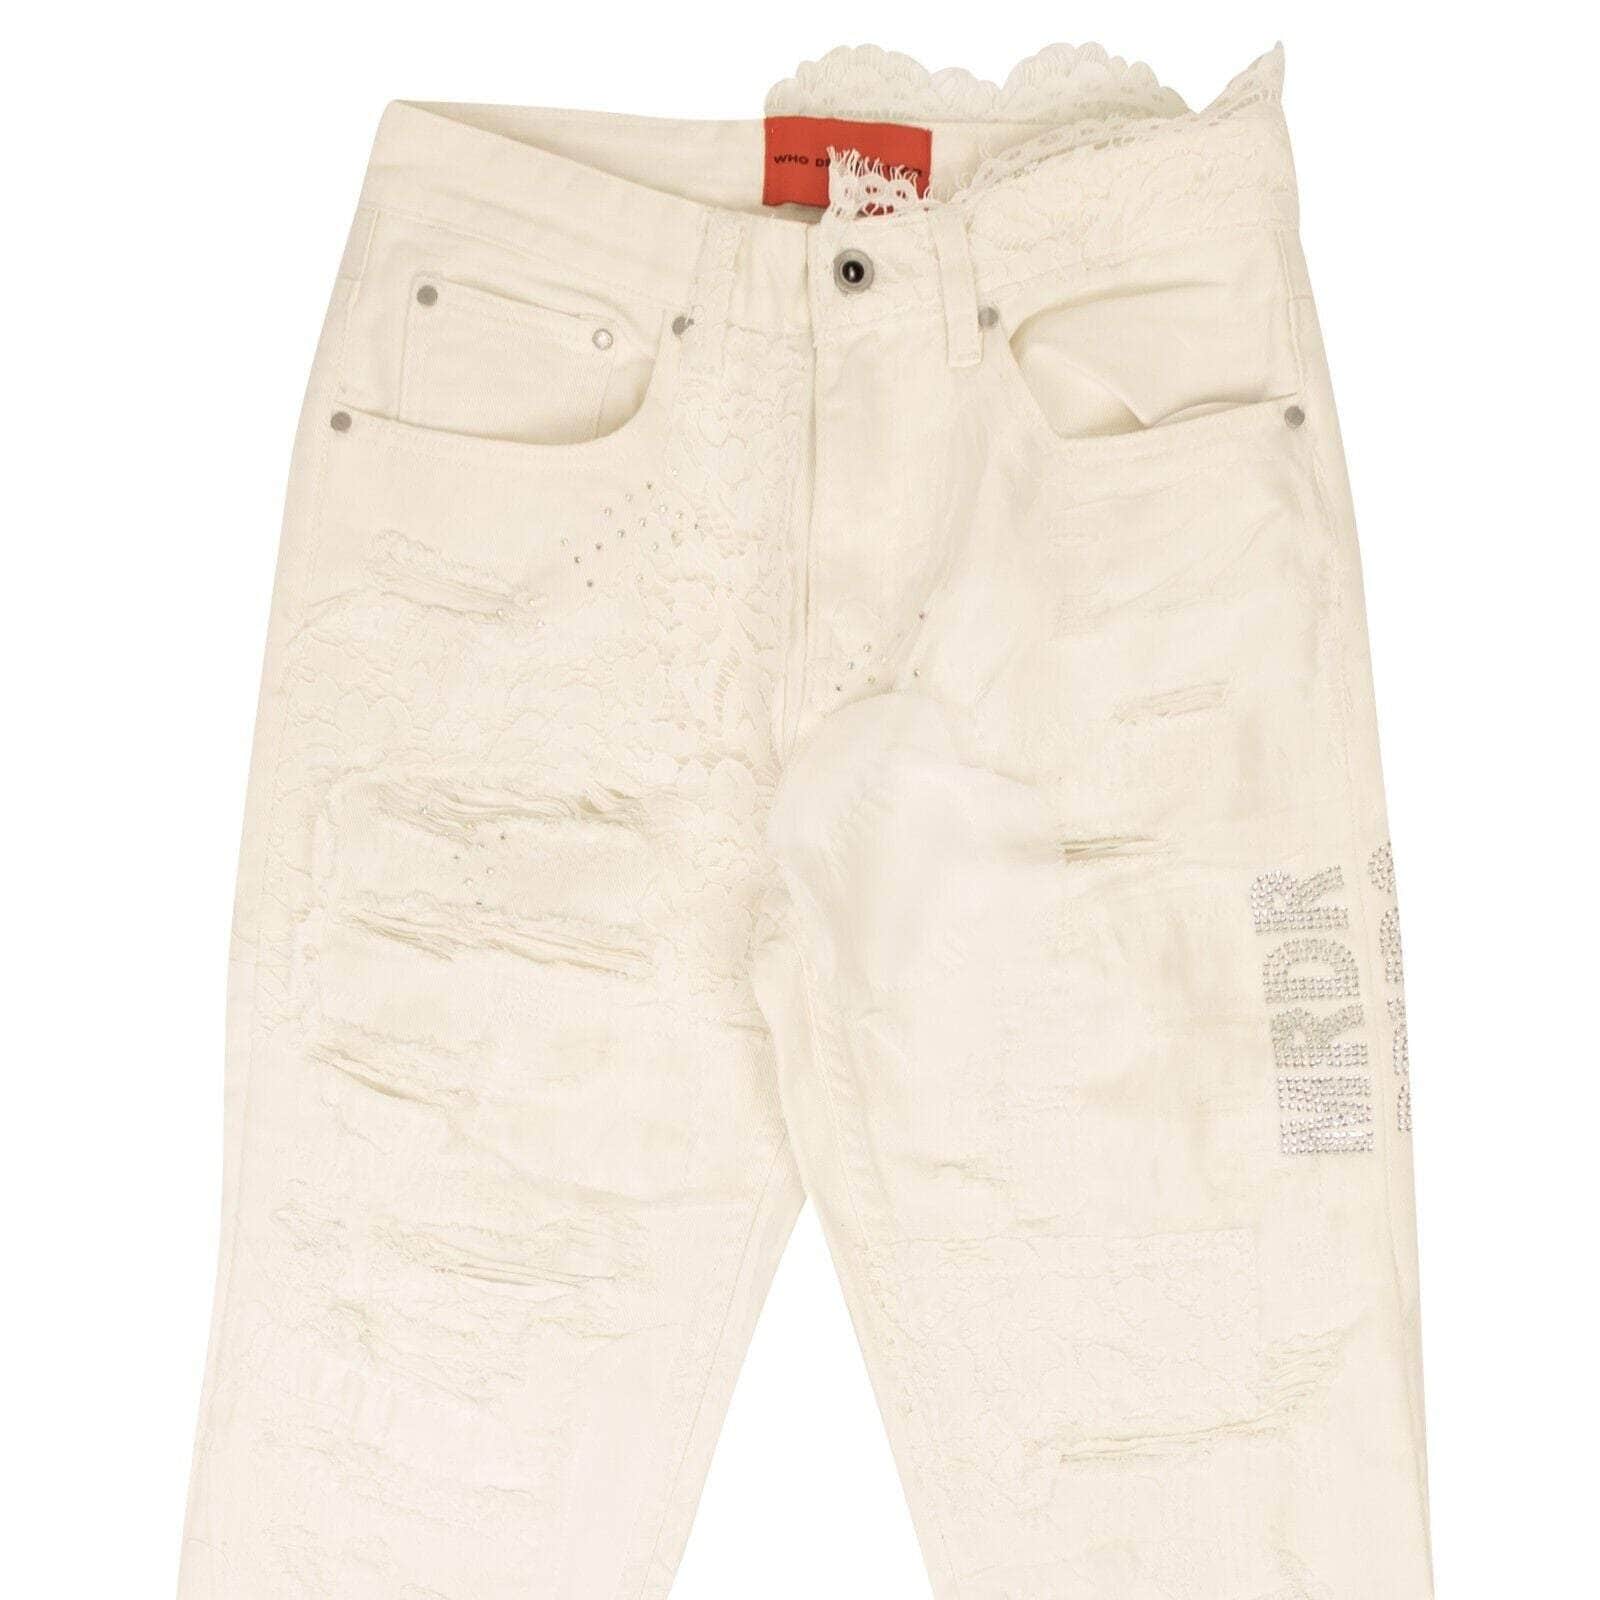 Who Decides War White Altar Lace Detail Denim Jeans